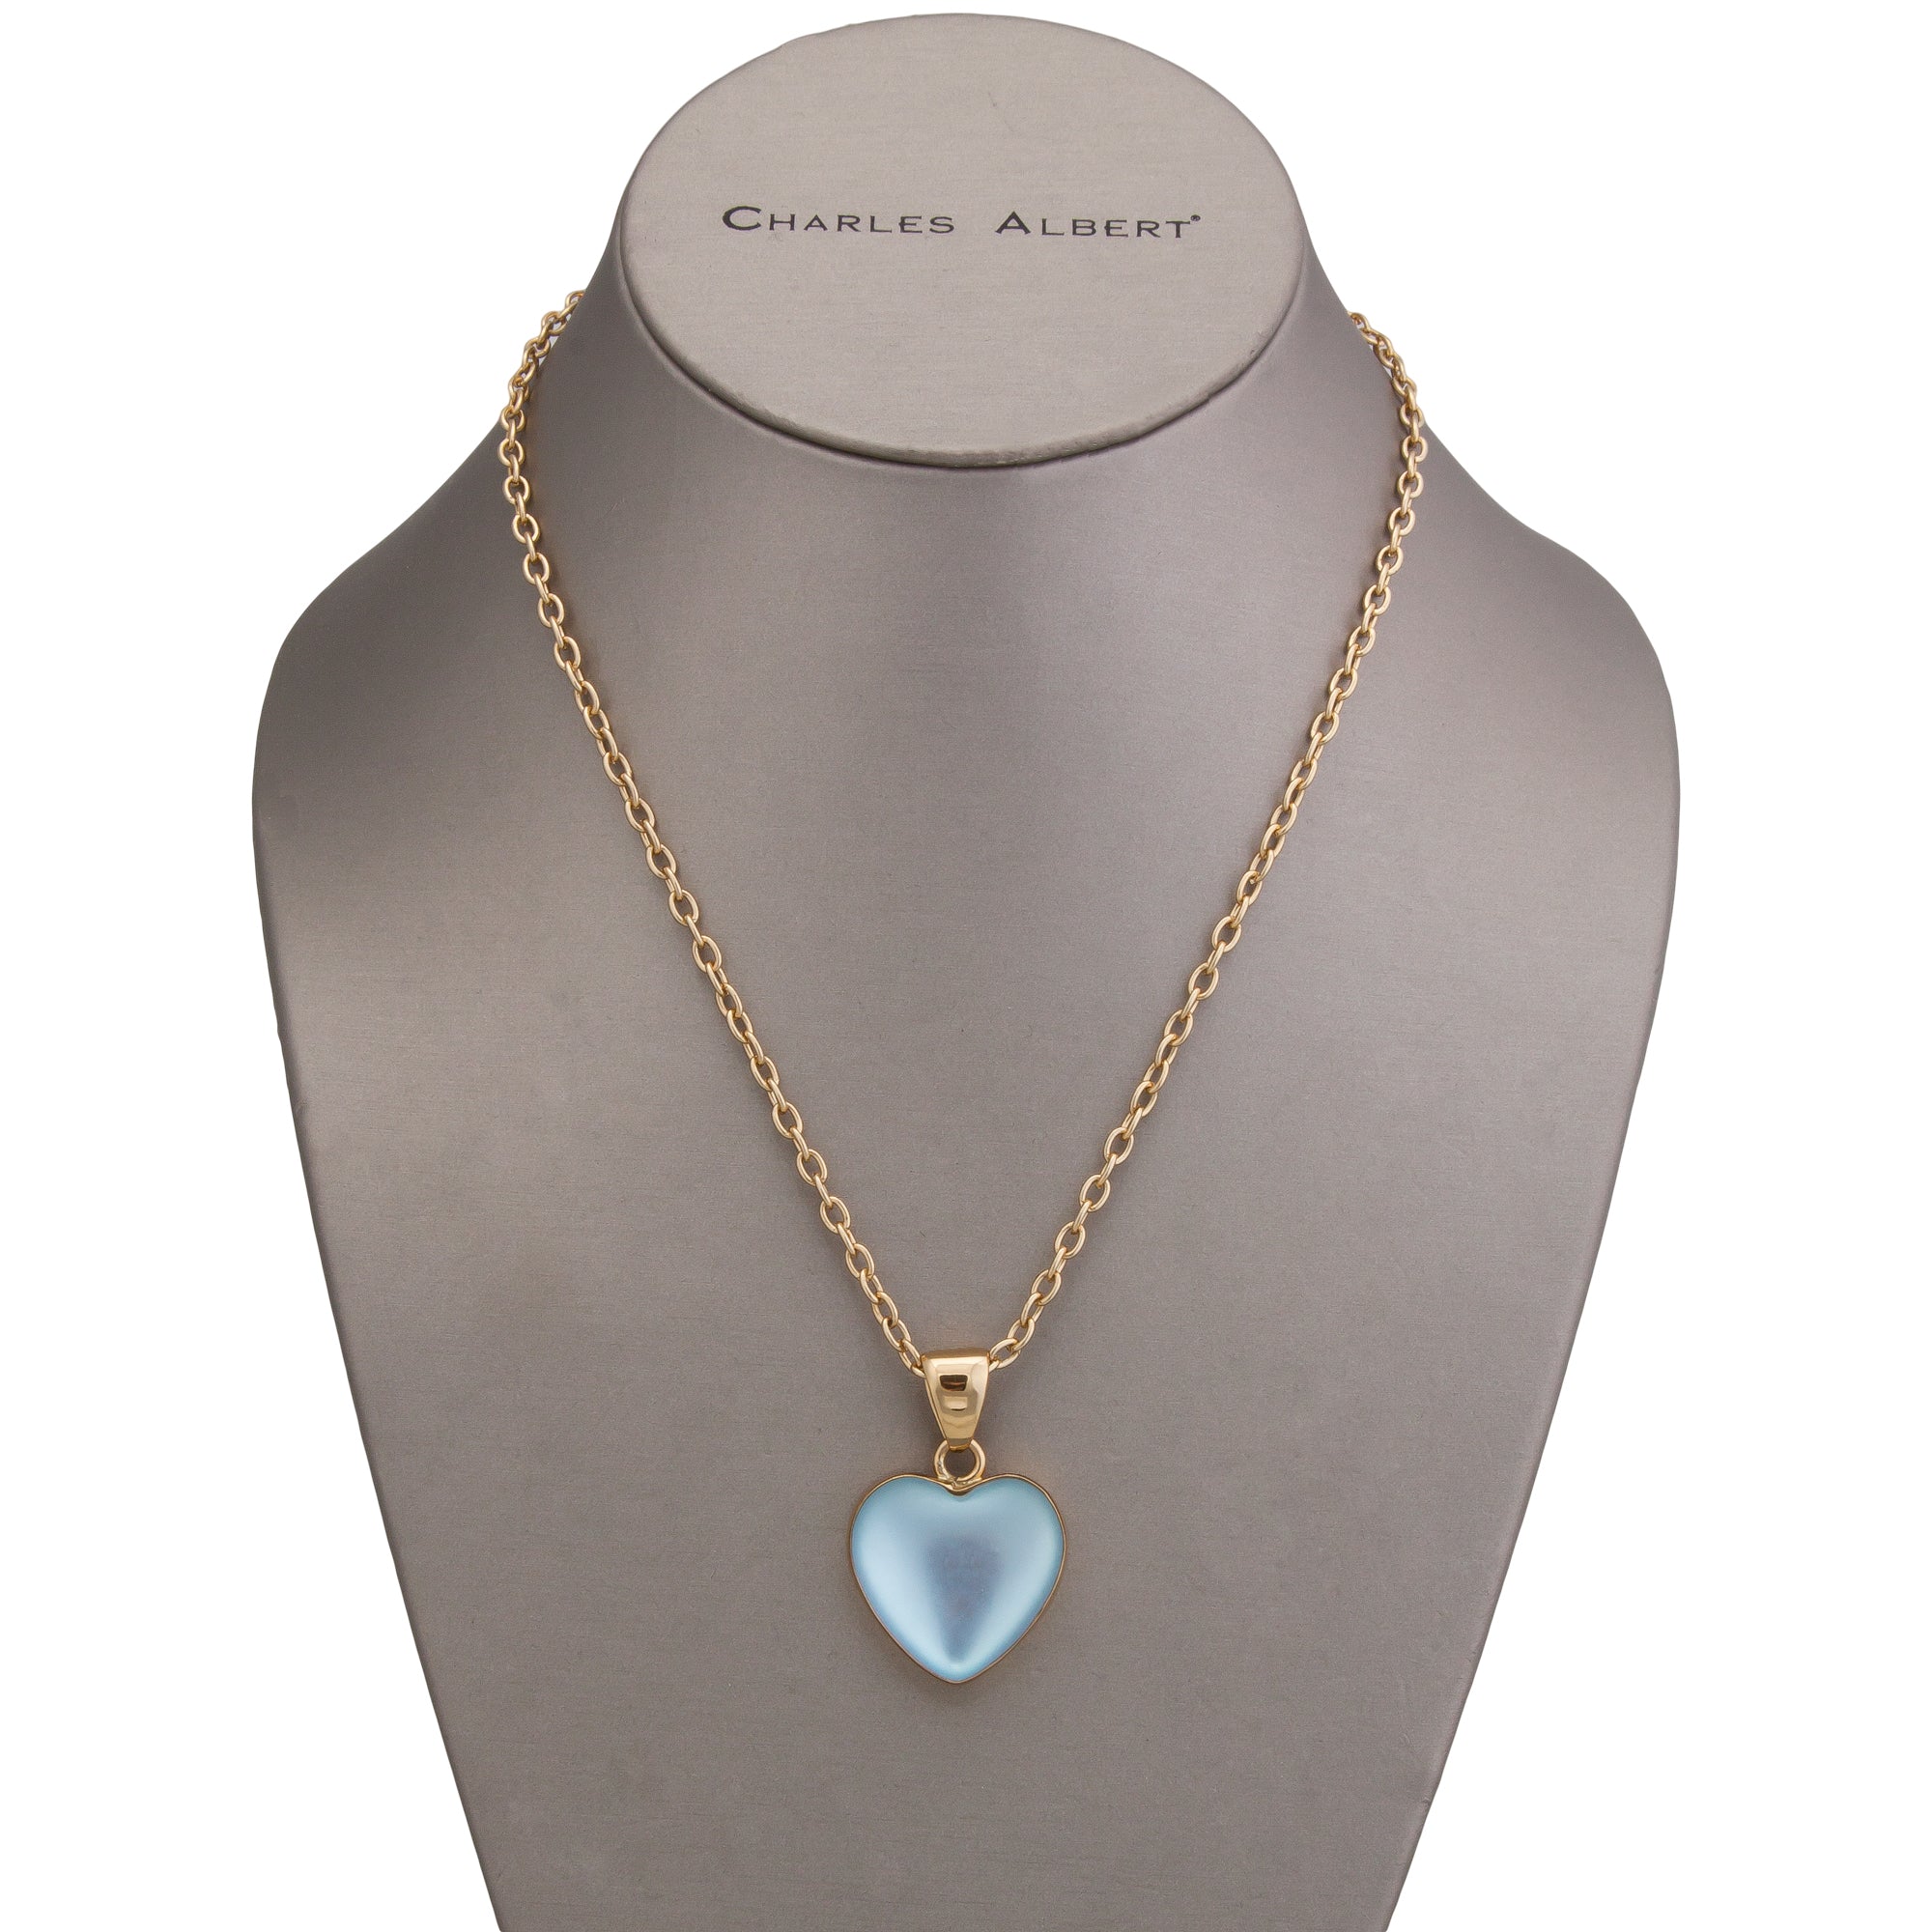 Alchemia Luminite Heart Pendant | Charles Albert Jewelry